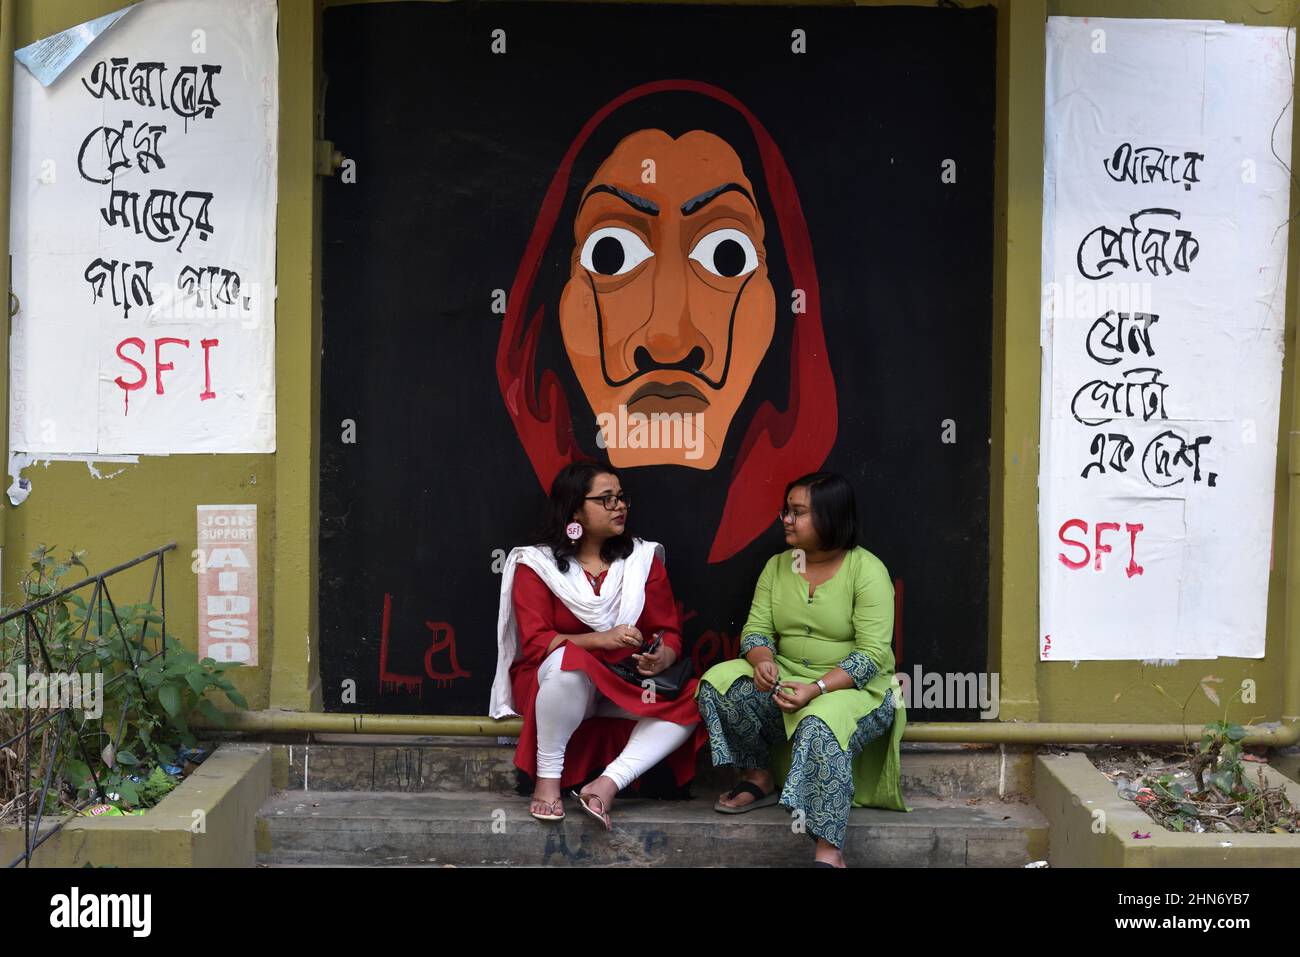 Ein Student der Universität Jadavpur der LGBTIQ-Gemeinschaft hebt eine Regenbogenfahne, während er an einer Kundgebung teilnimmt, um LGBTIQ-Rechte zu fordern und Gewalt gegen sie zu stoppen, anlässlich des Valentinstags. Am 14. Februar 2022 in Kalkutta, Indien. (Foto von Sukhomoy  Sen/ Eyepix Group) Stockfoto